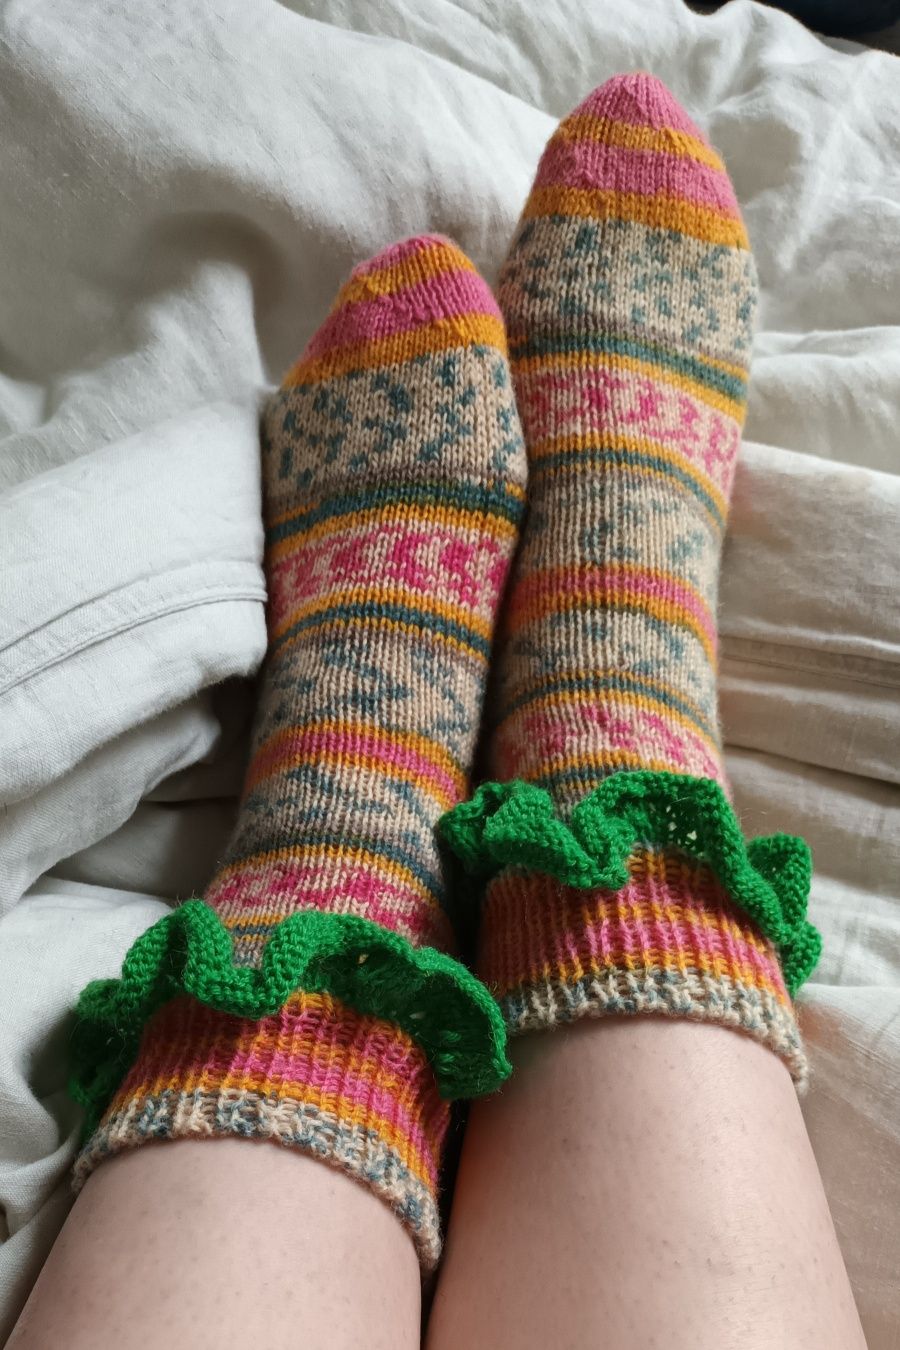 Ръчно плетени чорапи